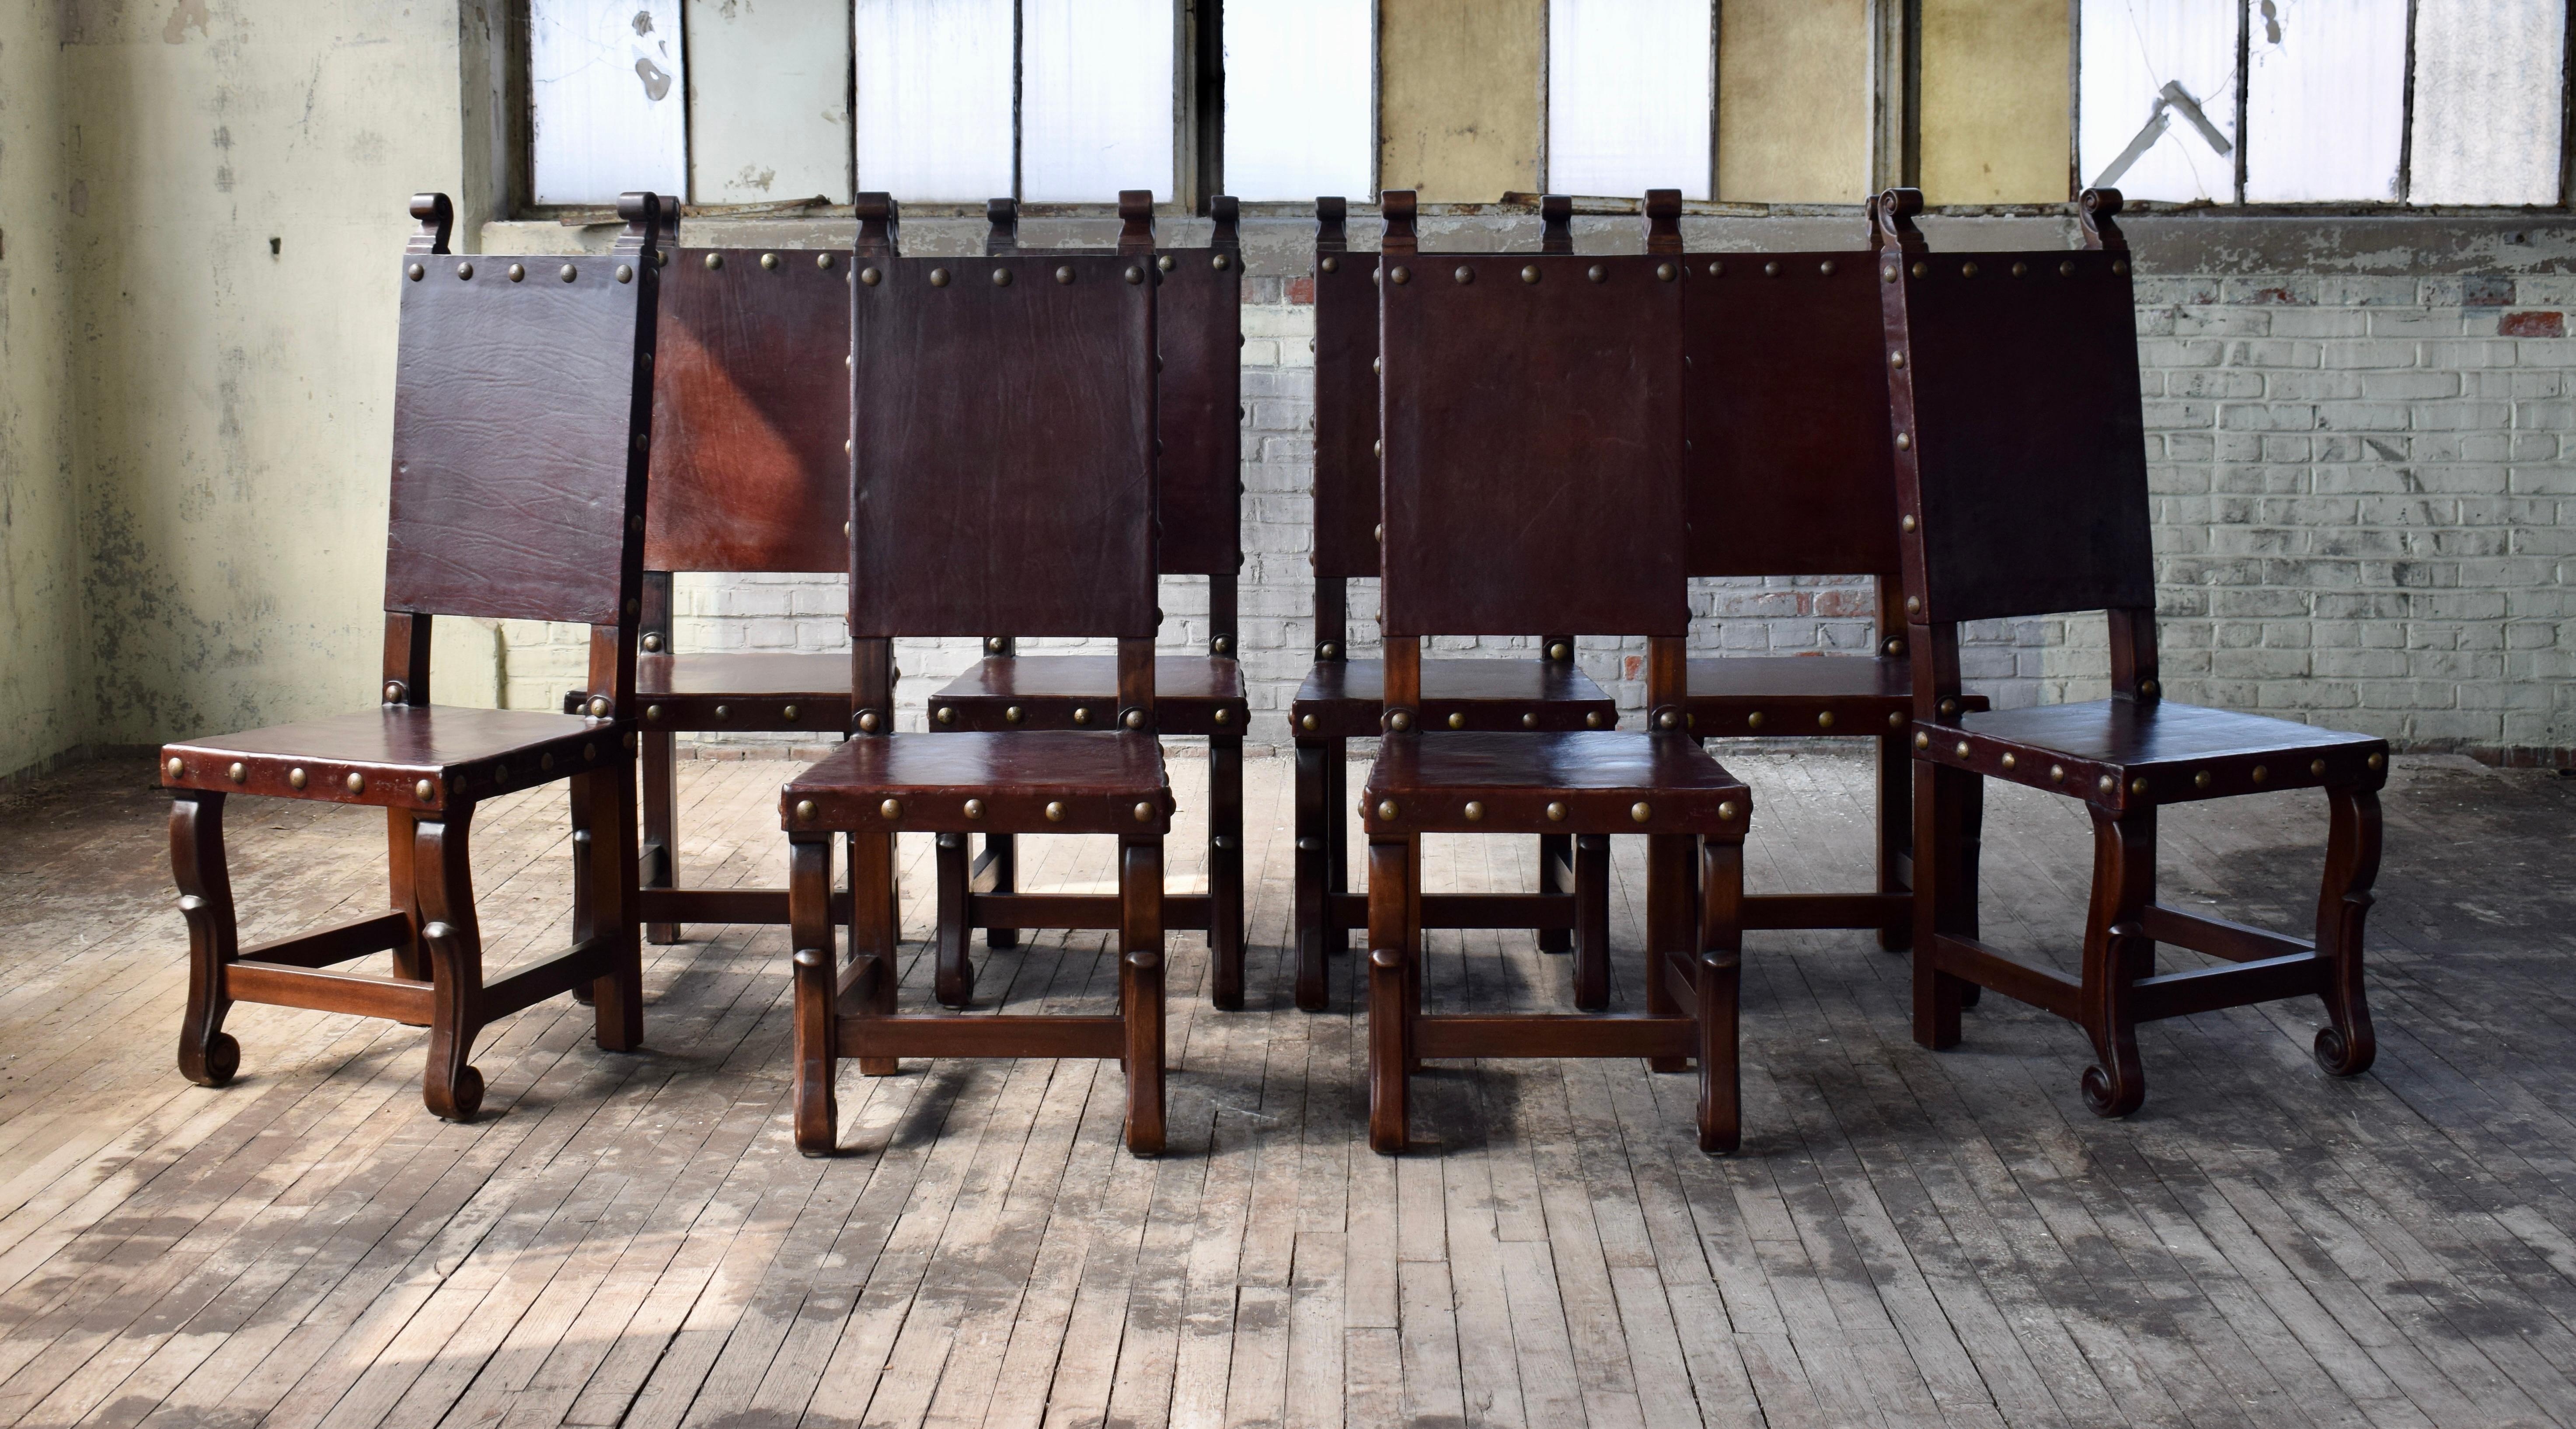 Satz von 10 geschnitzten Holzstühlen mit dicken Ledersitzen und Rückenlehnen, die mit Messingnagelköpfen im spanischen Kolonialstil verziert sind. Wunderschöner, felsenfester Zustand und sofort einsatzbereit.